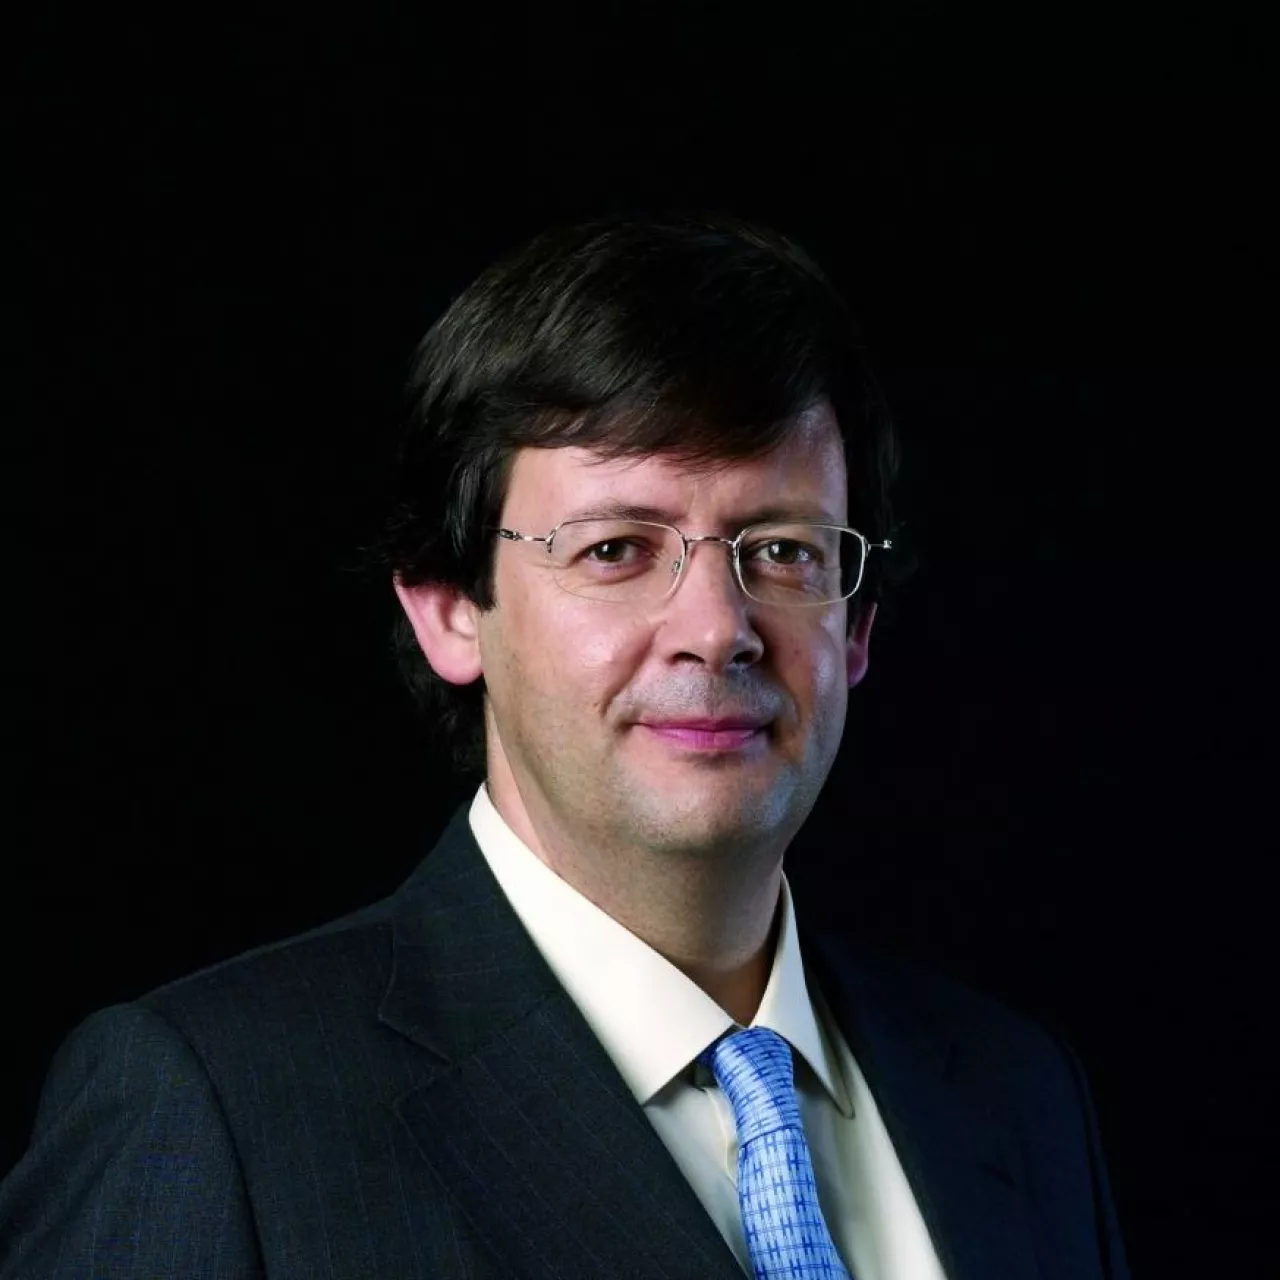 Pedro Soares dos Santos, prezes i CEO grupy Jeronimo Martins, fot. mat.pras. ()